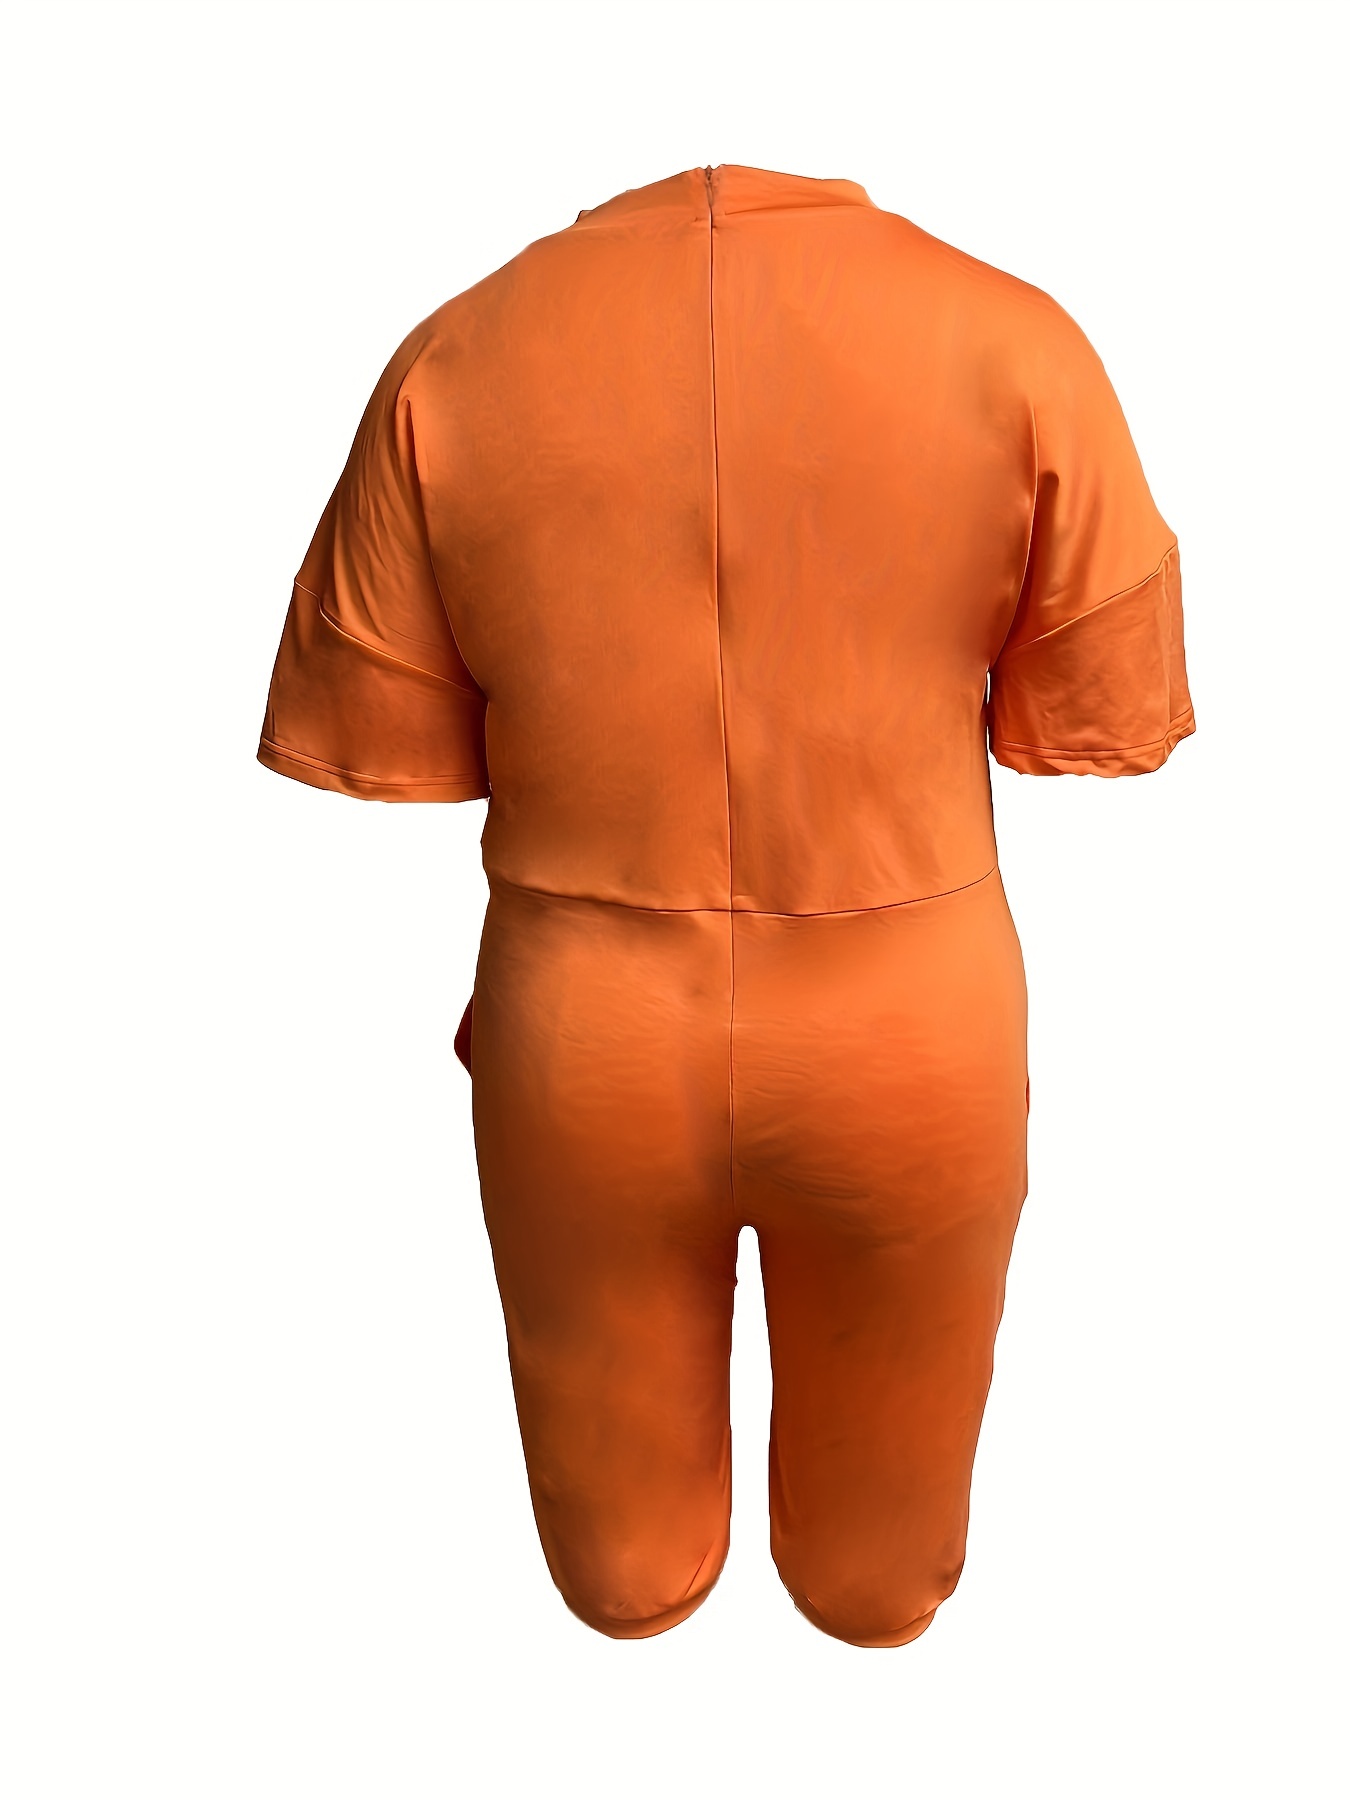 Plus Size Men's Prison Jumpsuit Costume